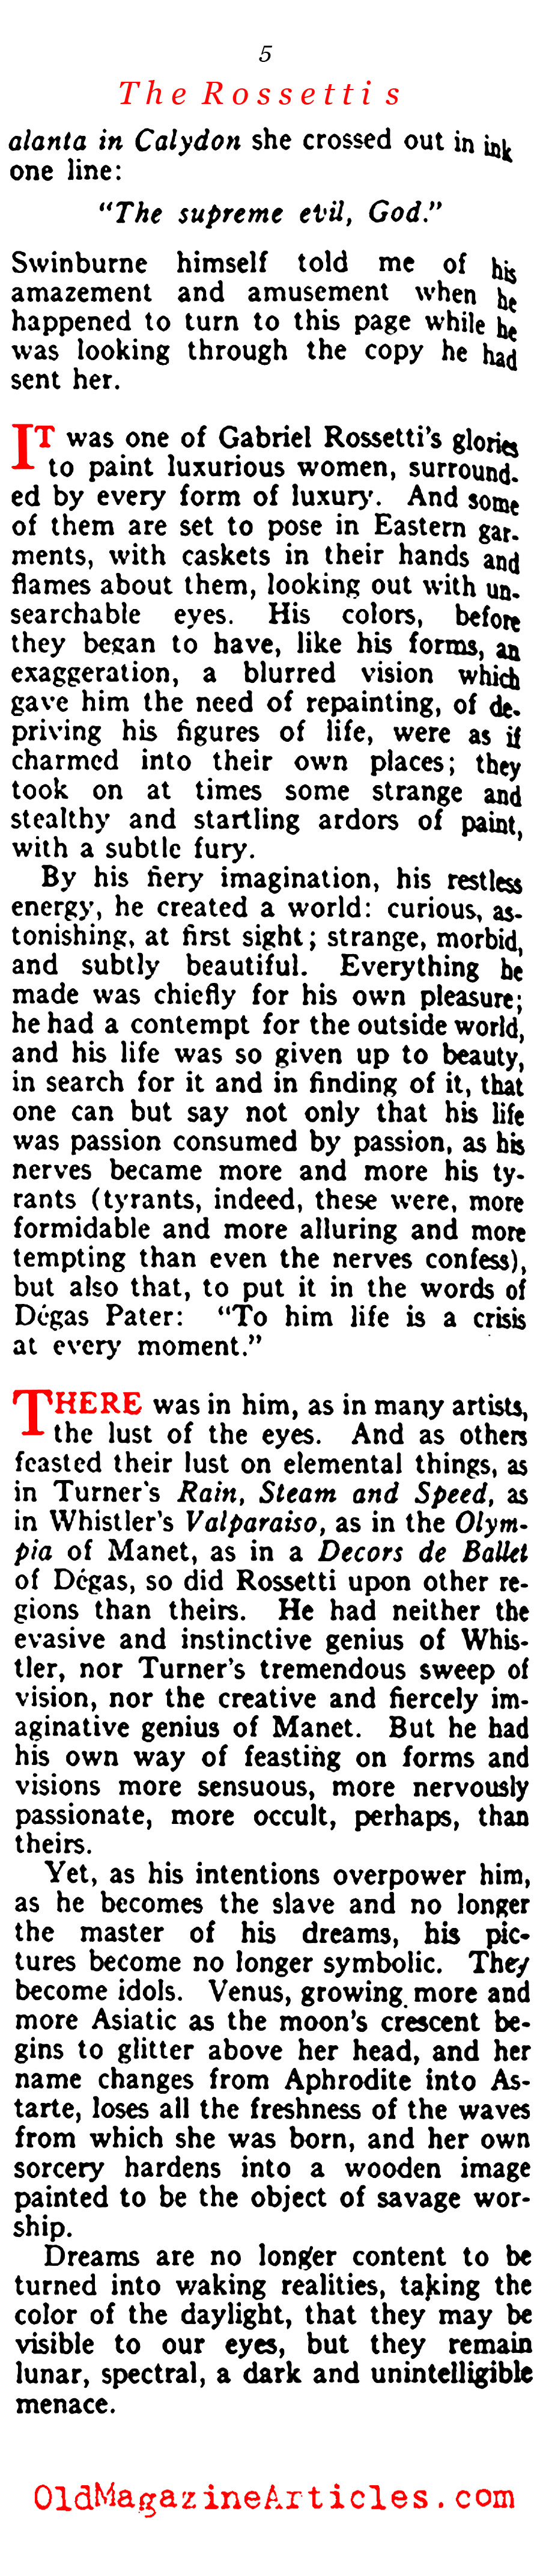 The Rosettis (Vanity Fair, 1919)